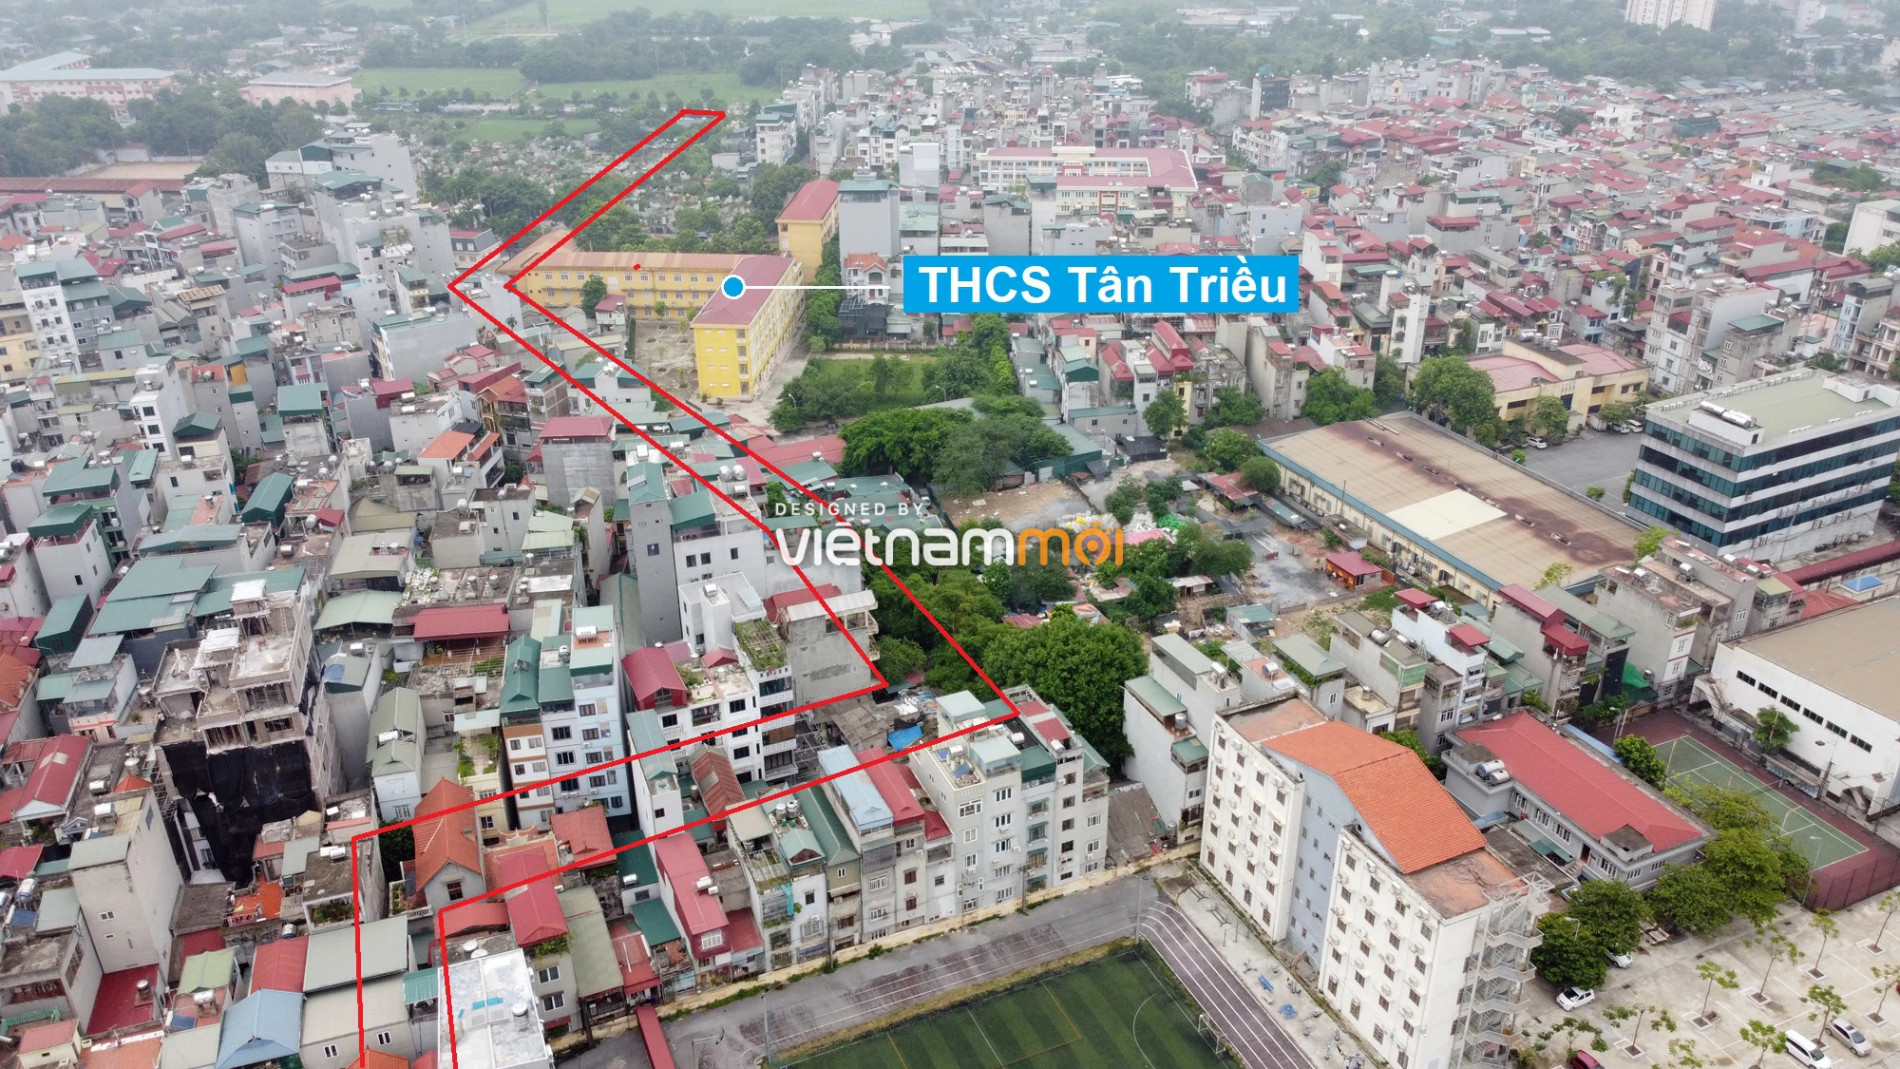 Những khu đất sắp thu hồi để mở đường ở xã Tân Triều, Thanh Trì, Hà Nội (phần 10) - Ảnh 6.